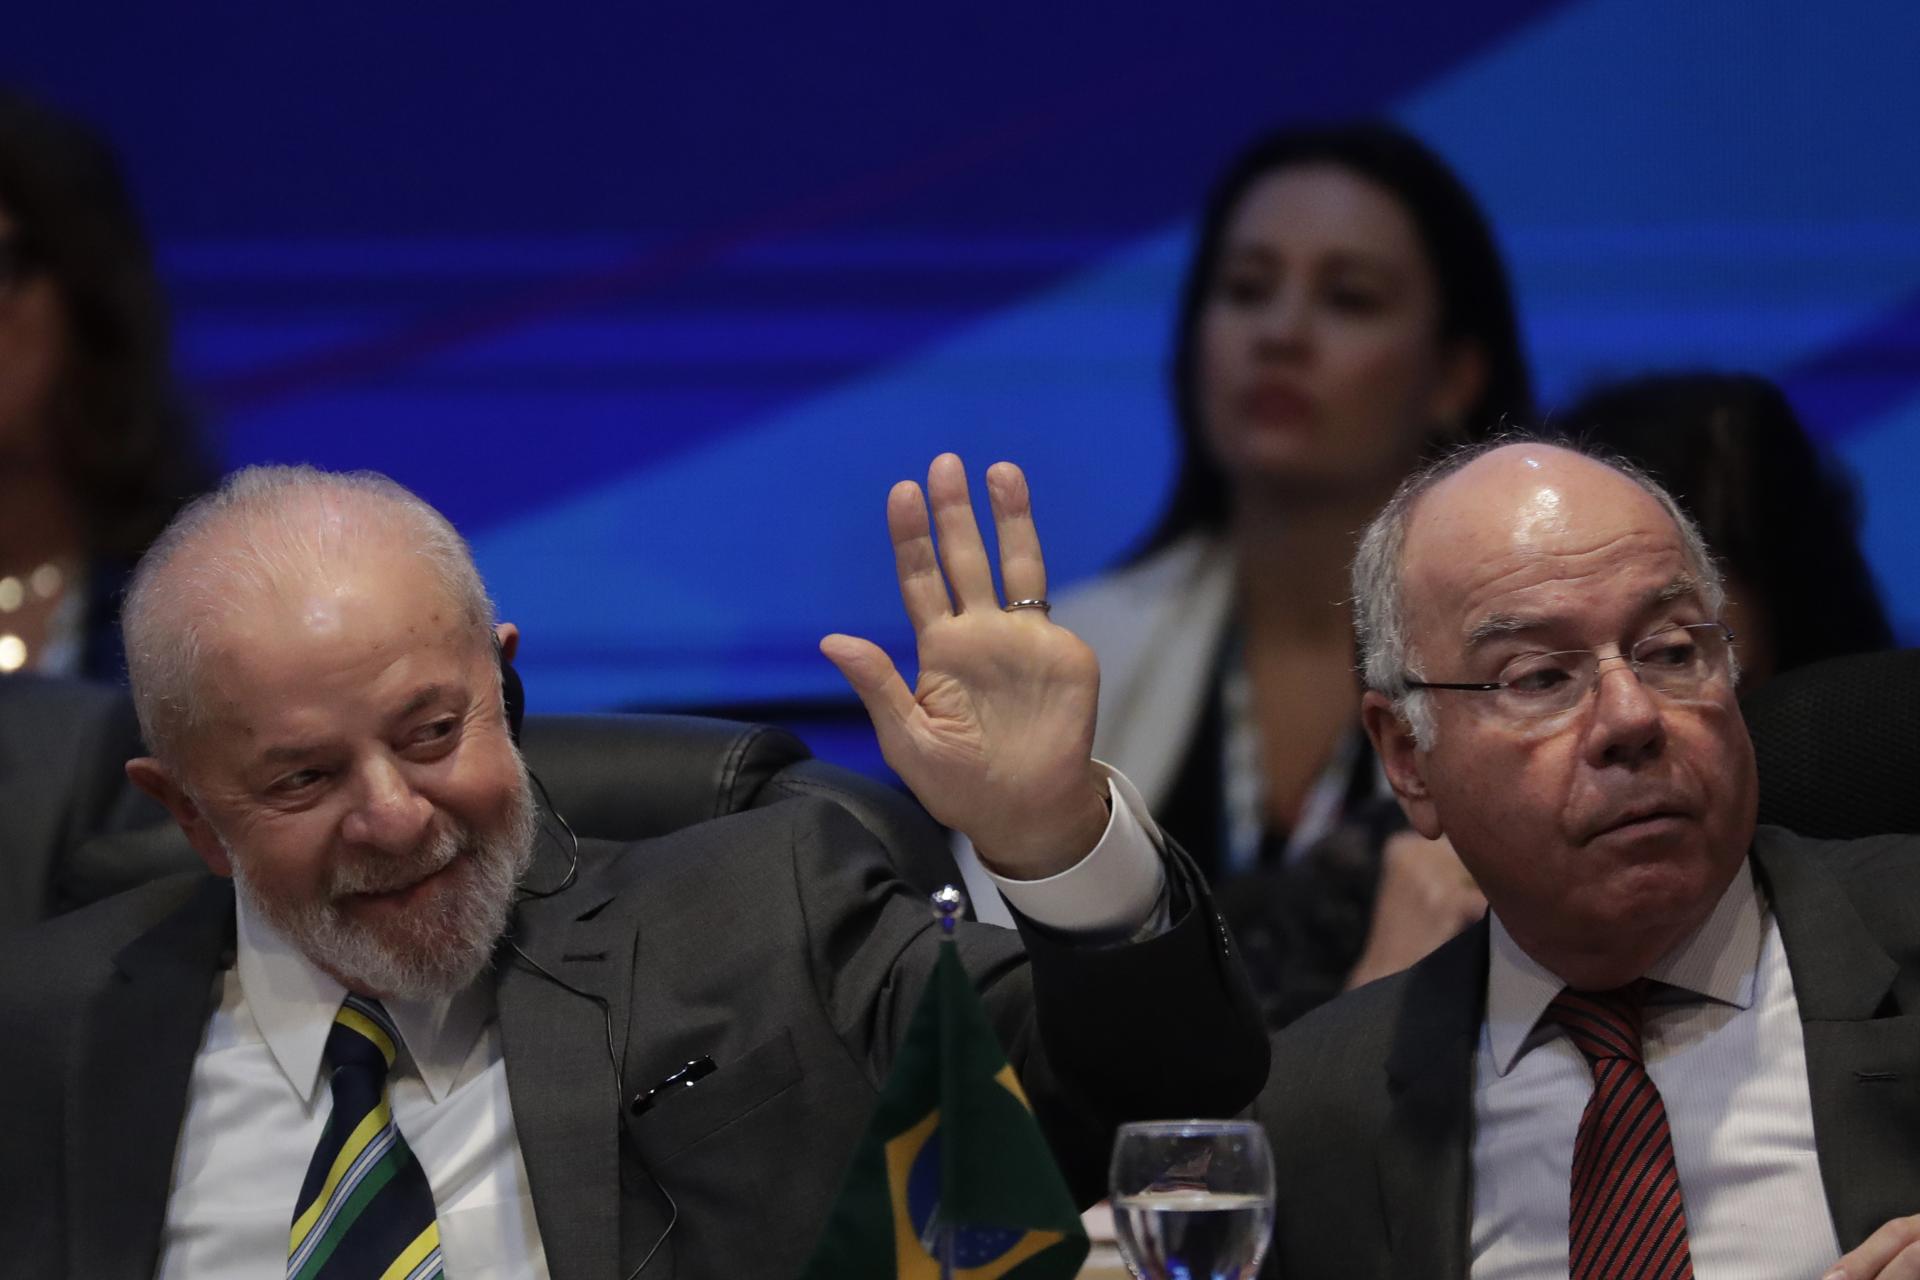 Boj proti nerovnosti a chudobe. Brazílsky prezident Lula predstavil globálnu iniciatívu proti hladu